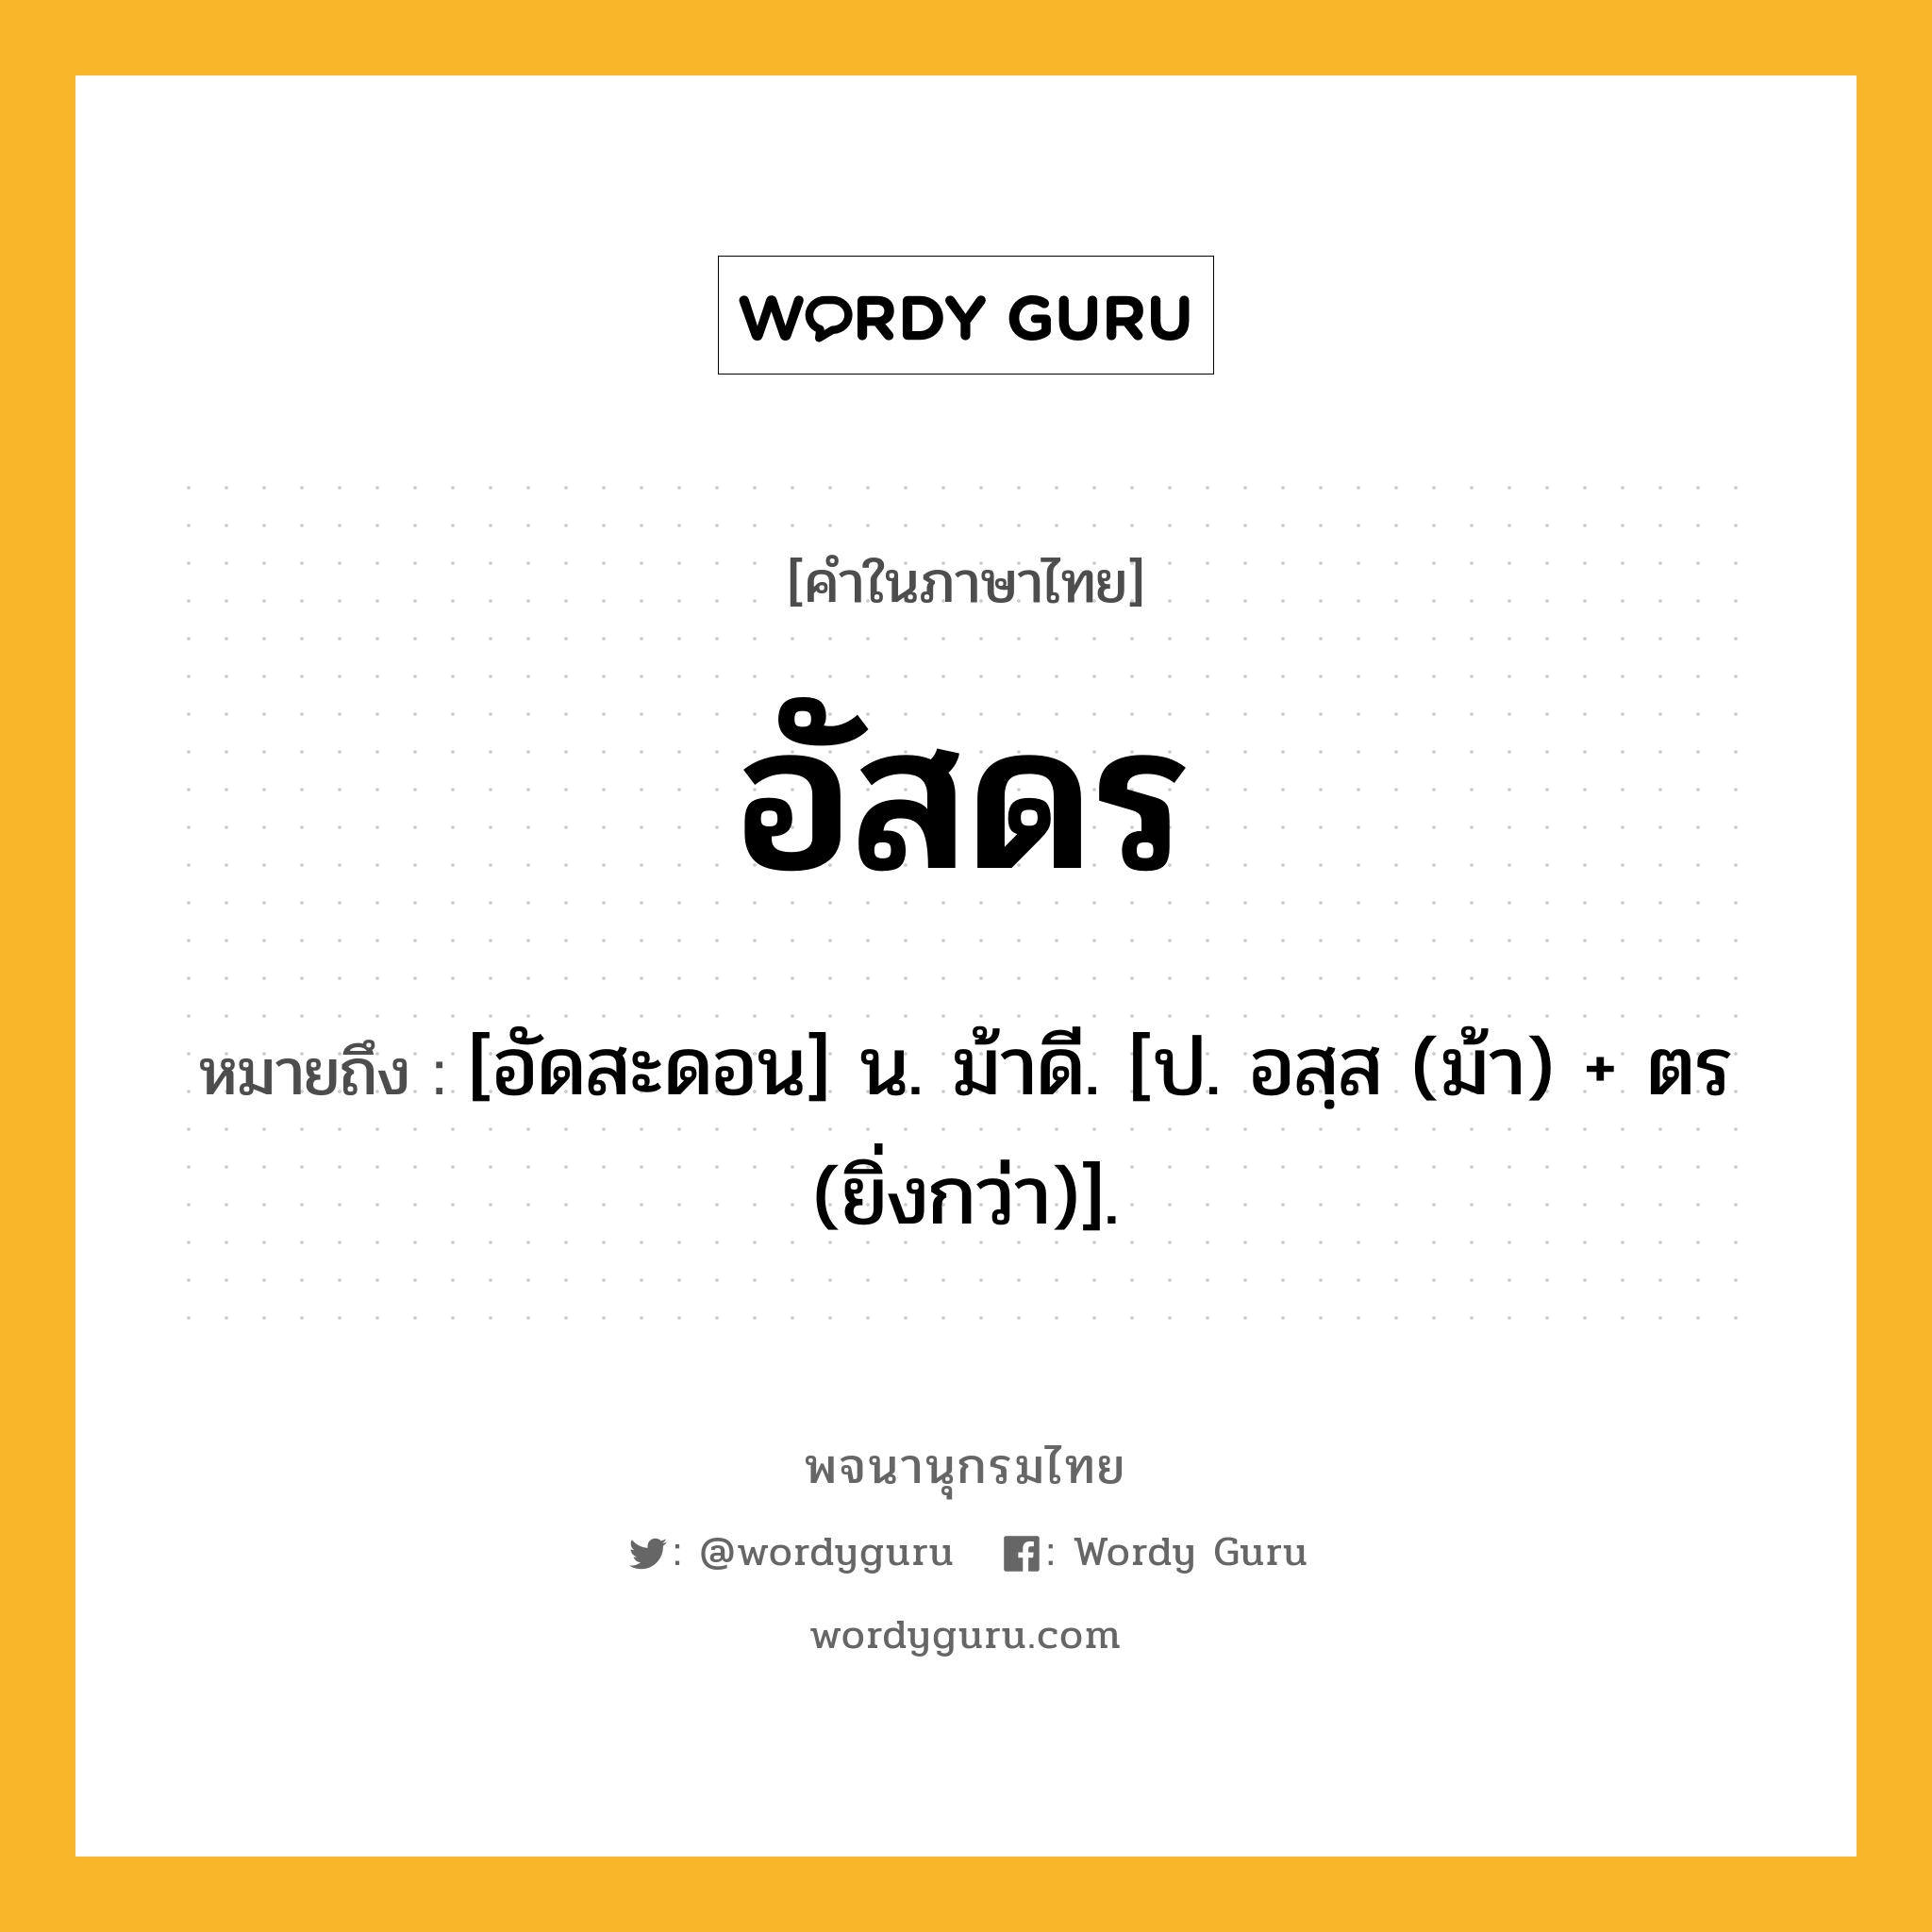 อัสดร ความหมาย หมายถึงอะไร?, คำในภาษาไทย อัสดร หมายถึง [อัดสะดอน] น. ม้าดี. [ป. อสฺส (ม้า) + ตร (ยิ่งกว่า)].